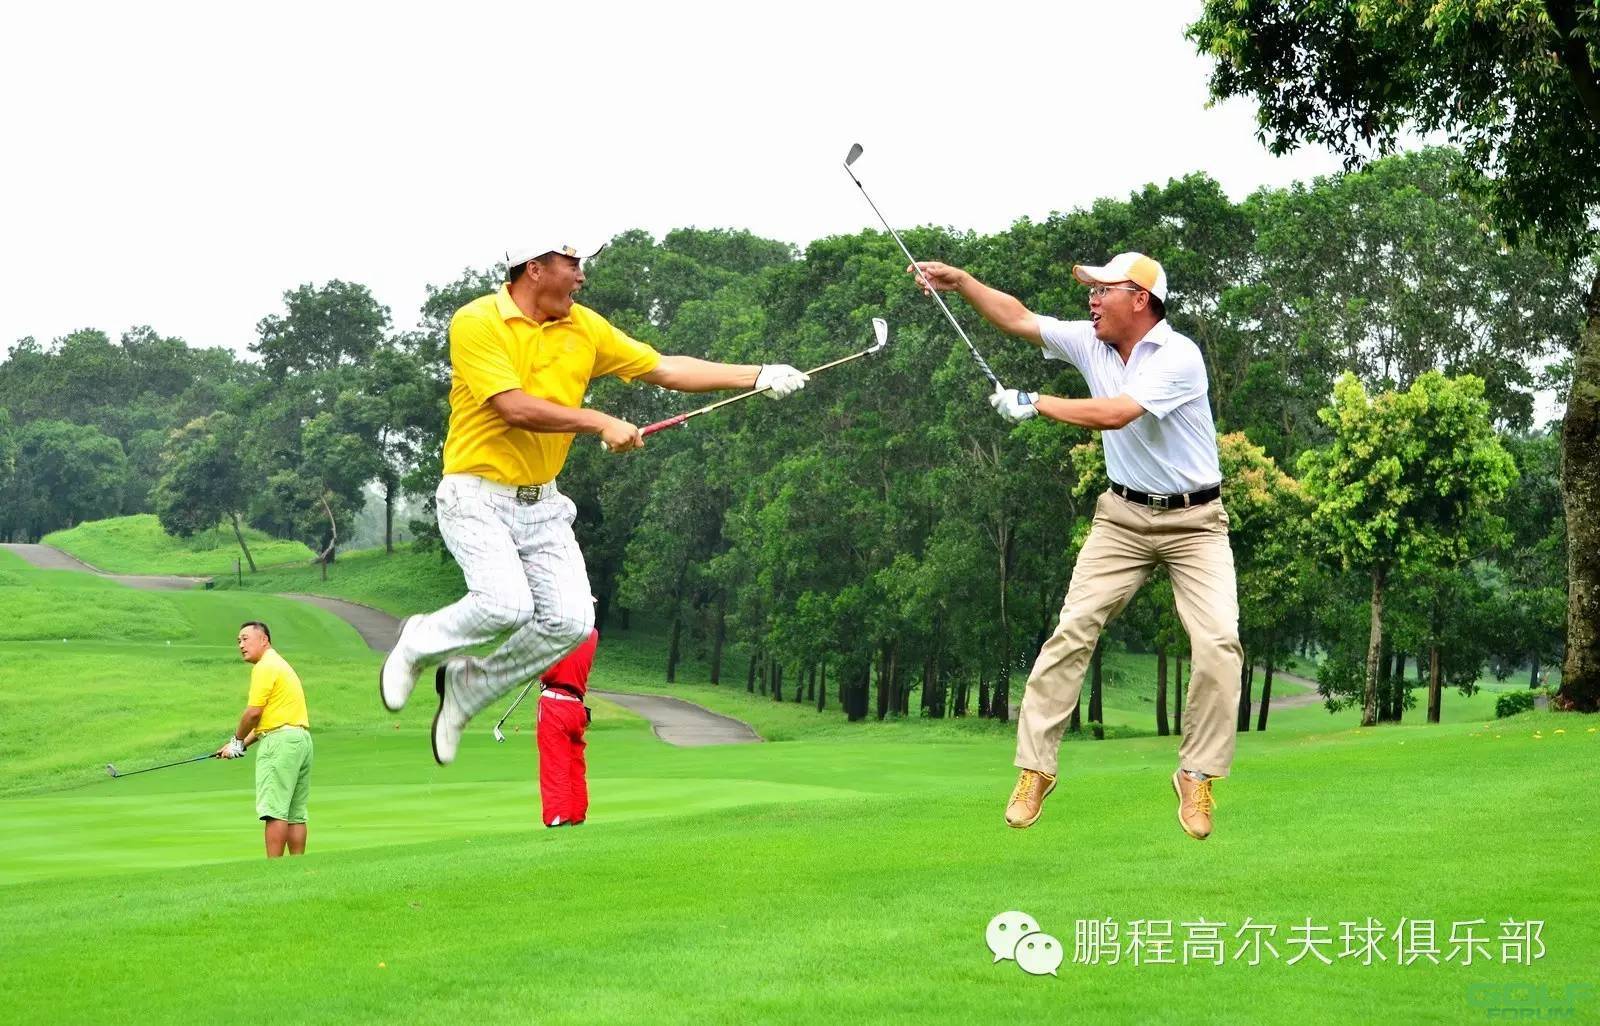 鹏程高尔夫球俱乐部“速源杯”邀请赛惊现信天翁